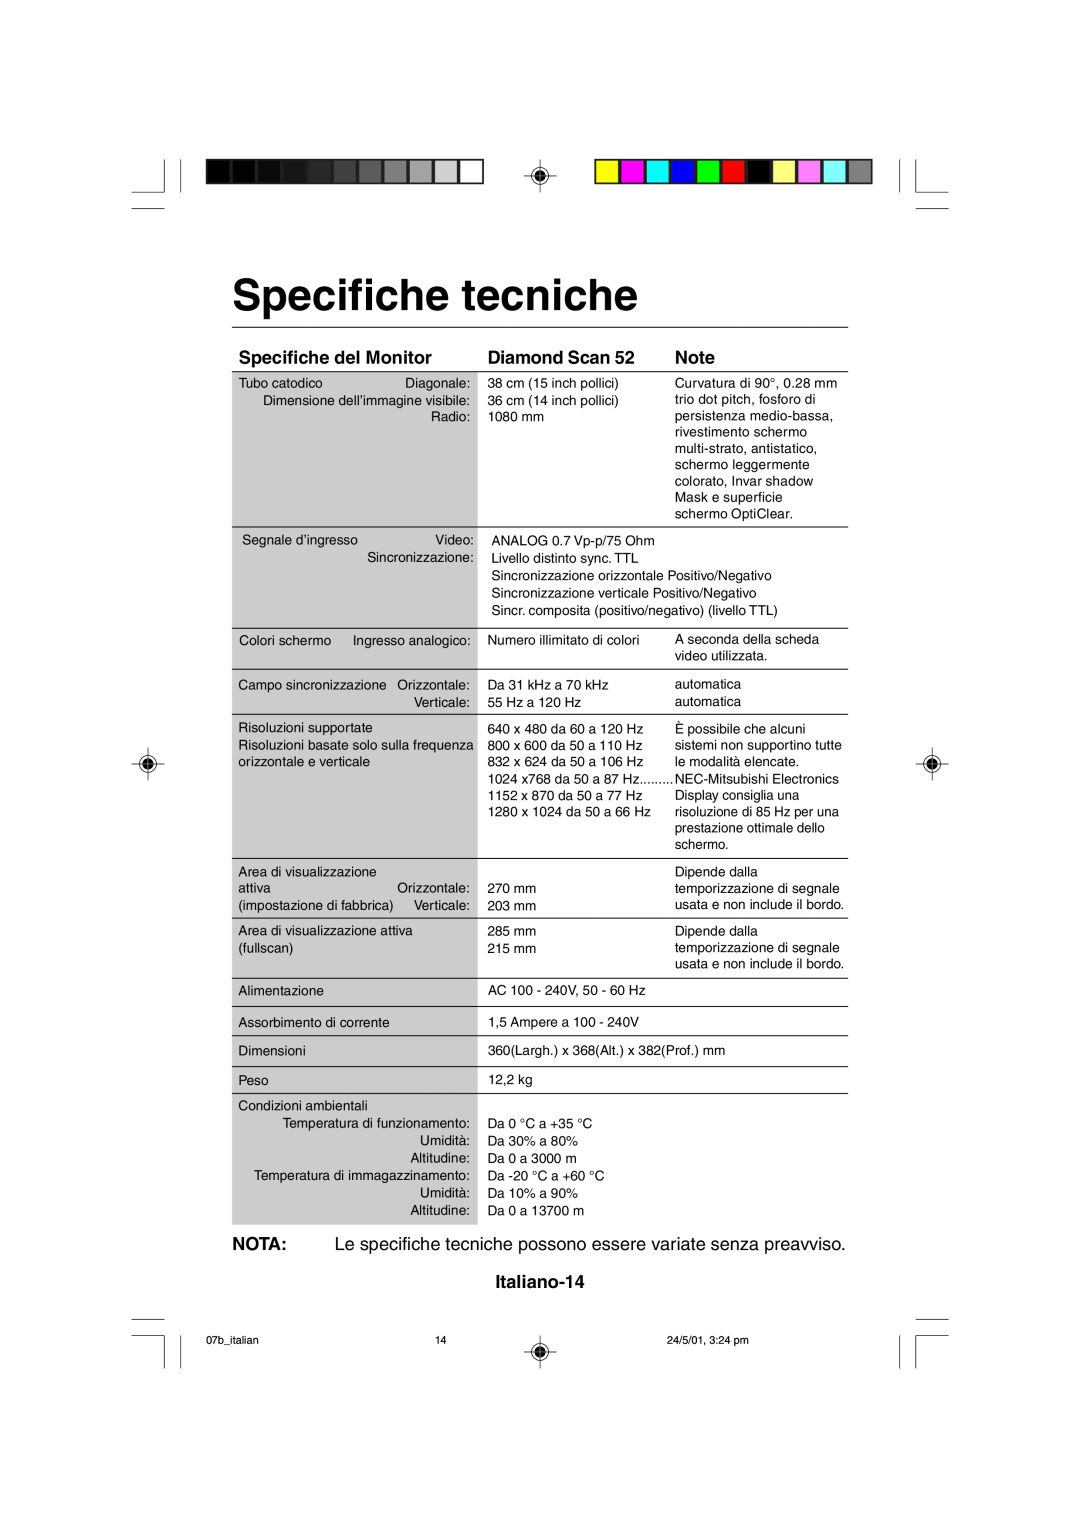 Mitsubishi Electronics M557 user manual Specifiche tecniche, Specifiche del Monitor, Diamond Scan, Italiano-14 